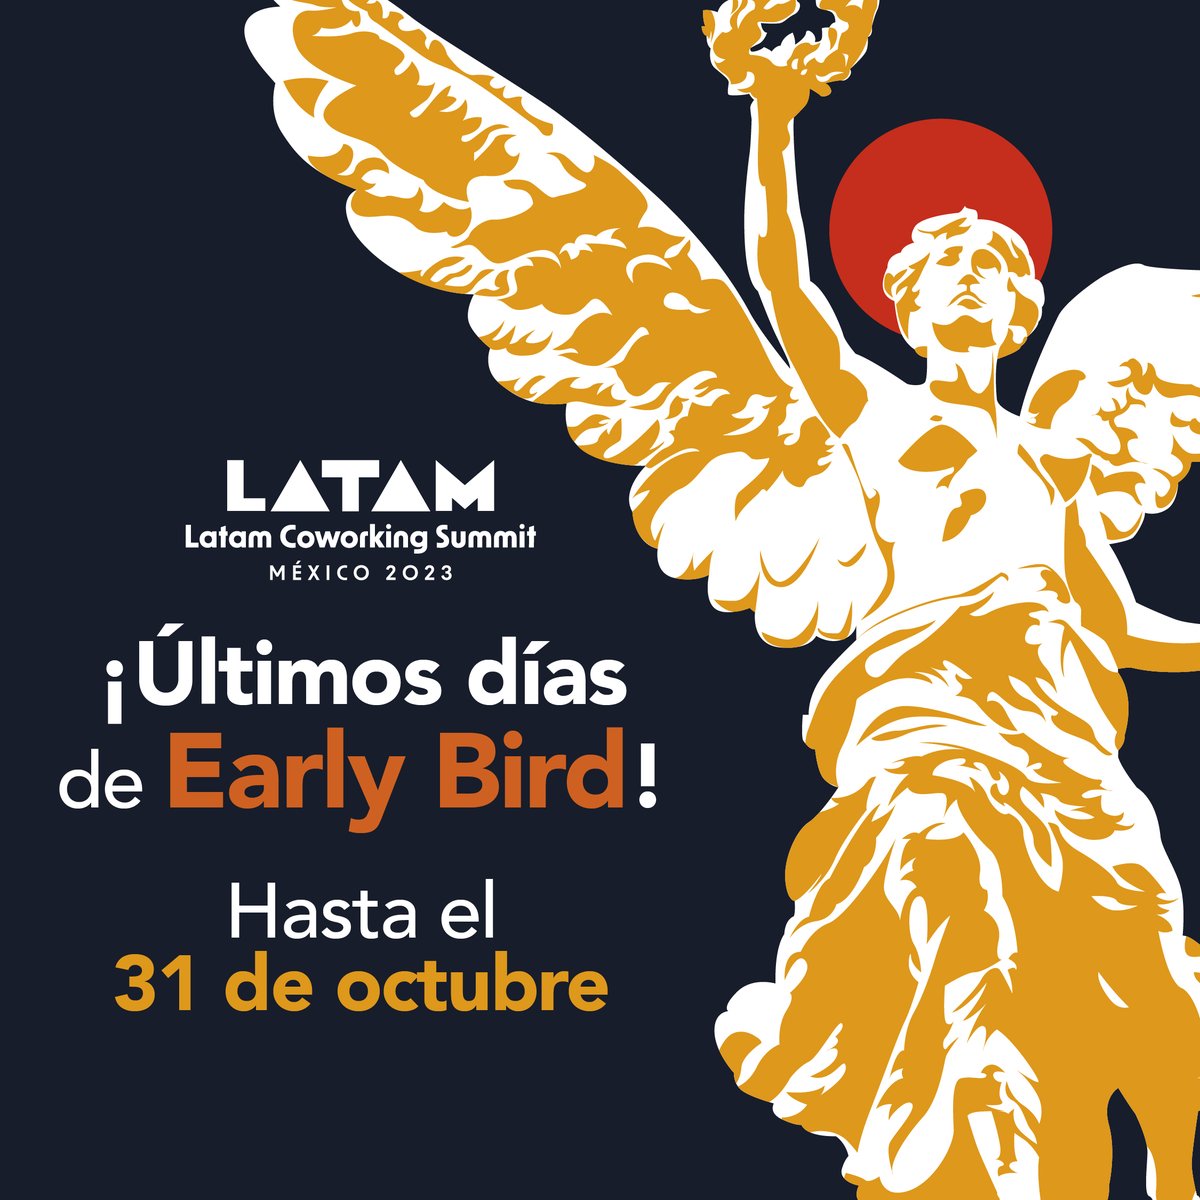 ⚠️ ¡Última llamada para adquirir entradas a Latam Coworking Summit 2023 en Ciudad de México a precio preferencial de preventa! ⏰

Más información y reservaciones en bit.ly/latamcoworking… y en nuestro sitio web oficial latamsummit.co 👈🏼

#LCS23 #Coworking #FlexSpaces